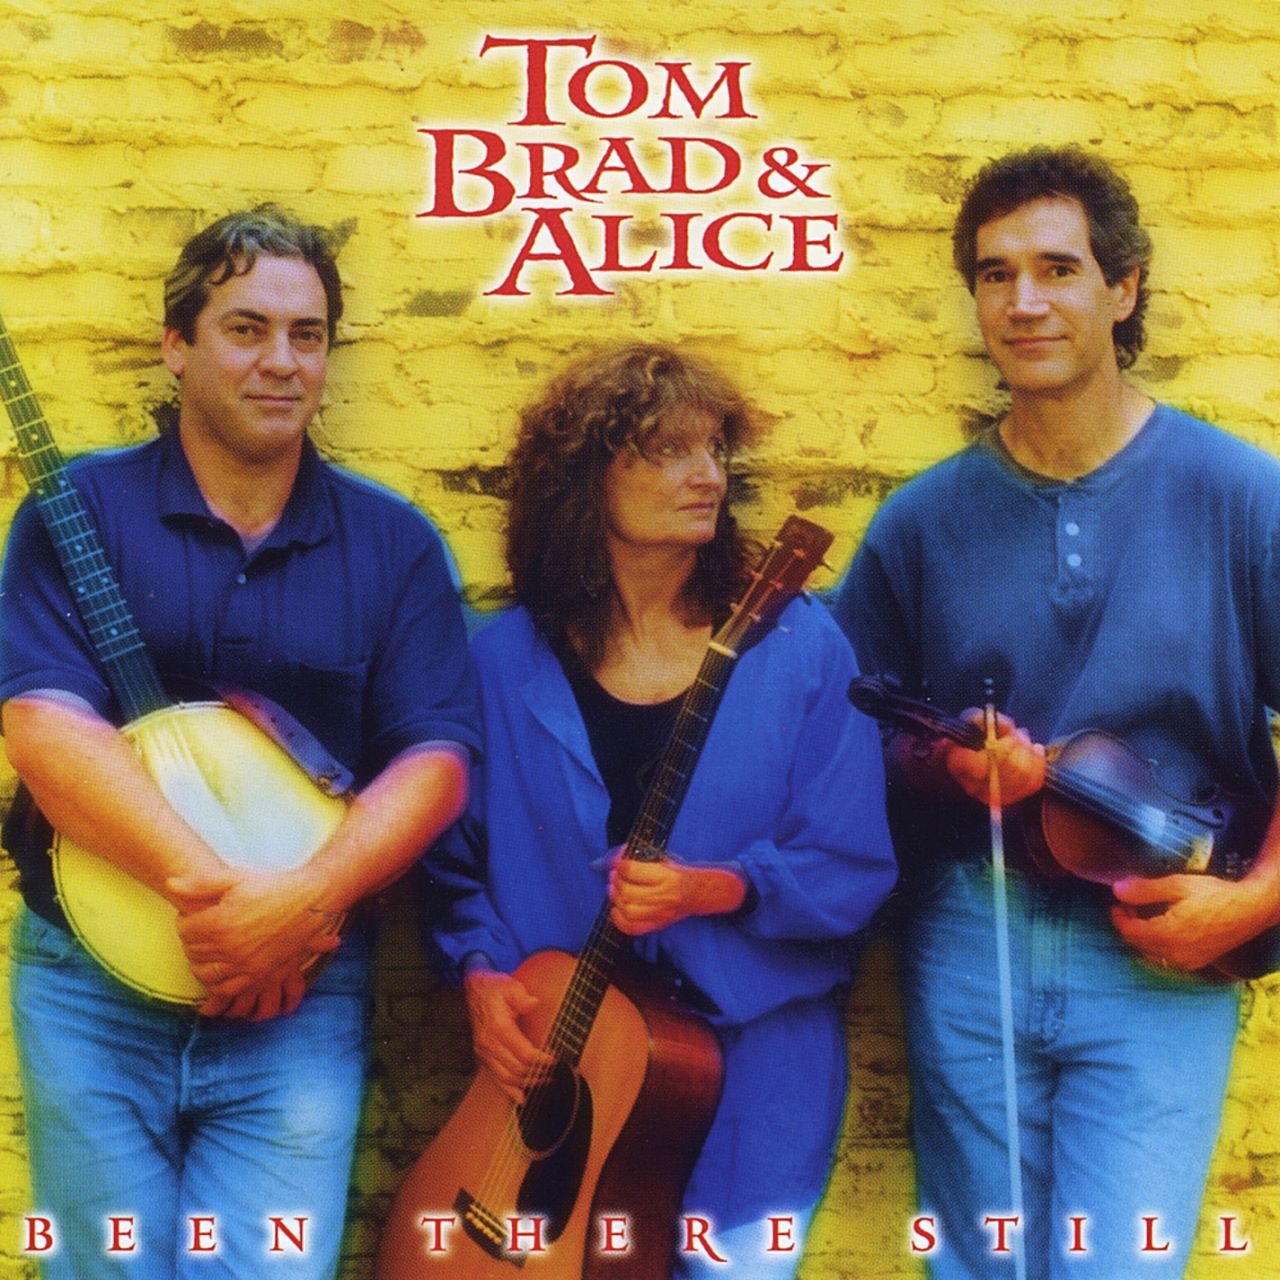 Tom, Brad & Alice - Been There Still cover album